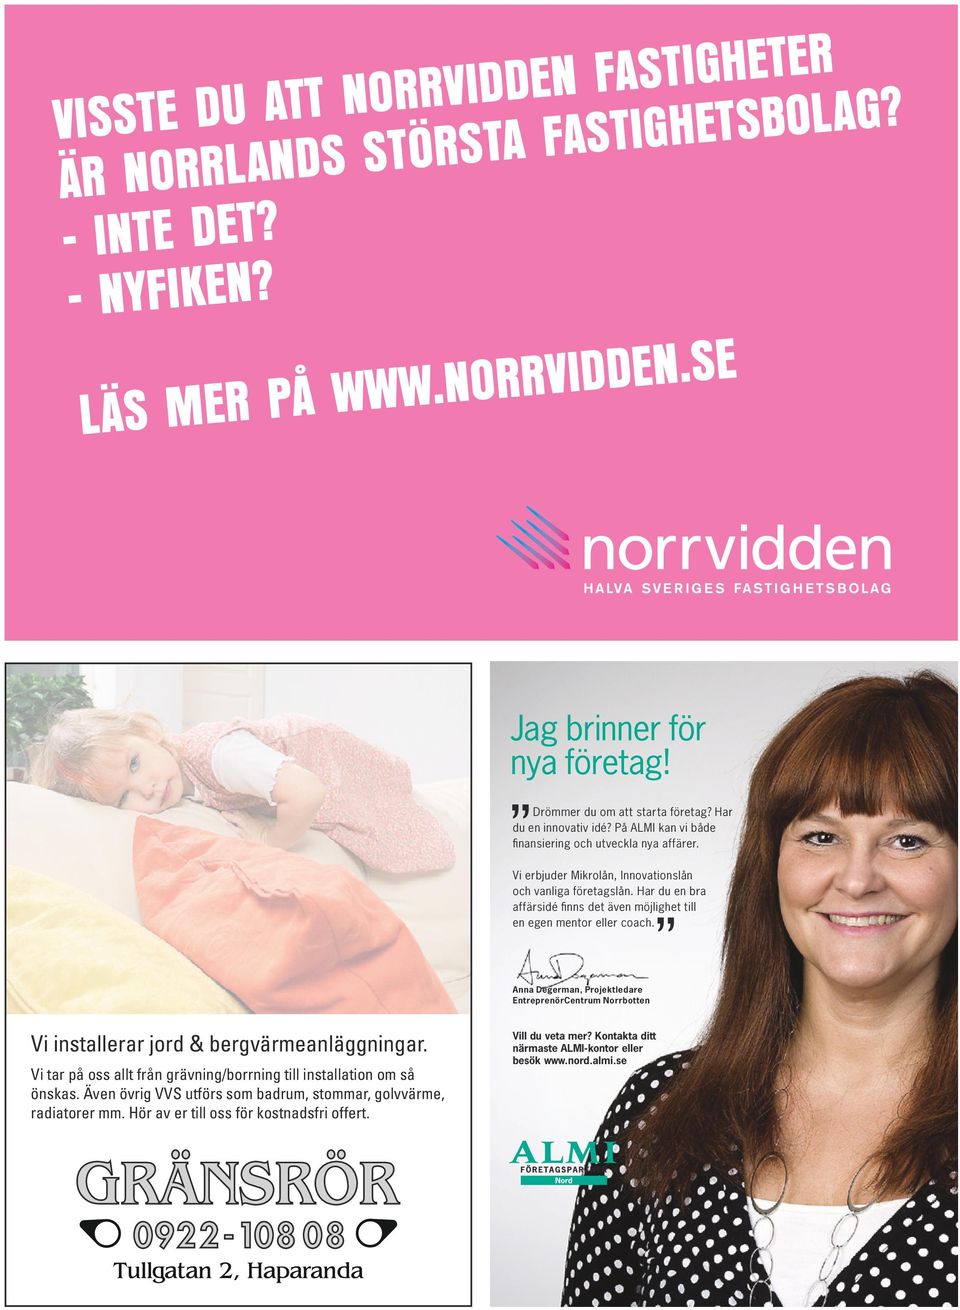 Har du en bra affärsidé finns det även möjlighet till en egen mentor eller coach. Anna Degerman, Projektledare EntreprenörCentrum Norrbotten Vi installerar jord & bergvärmeanläggningar.